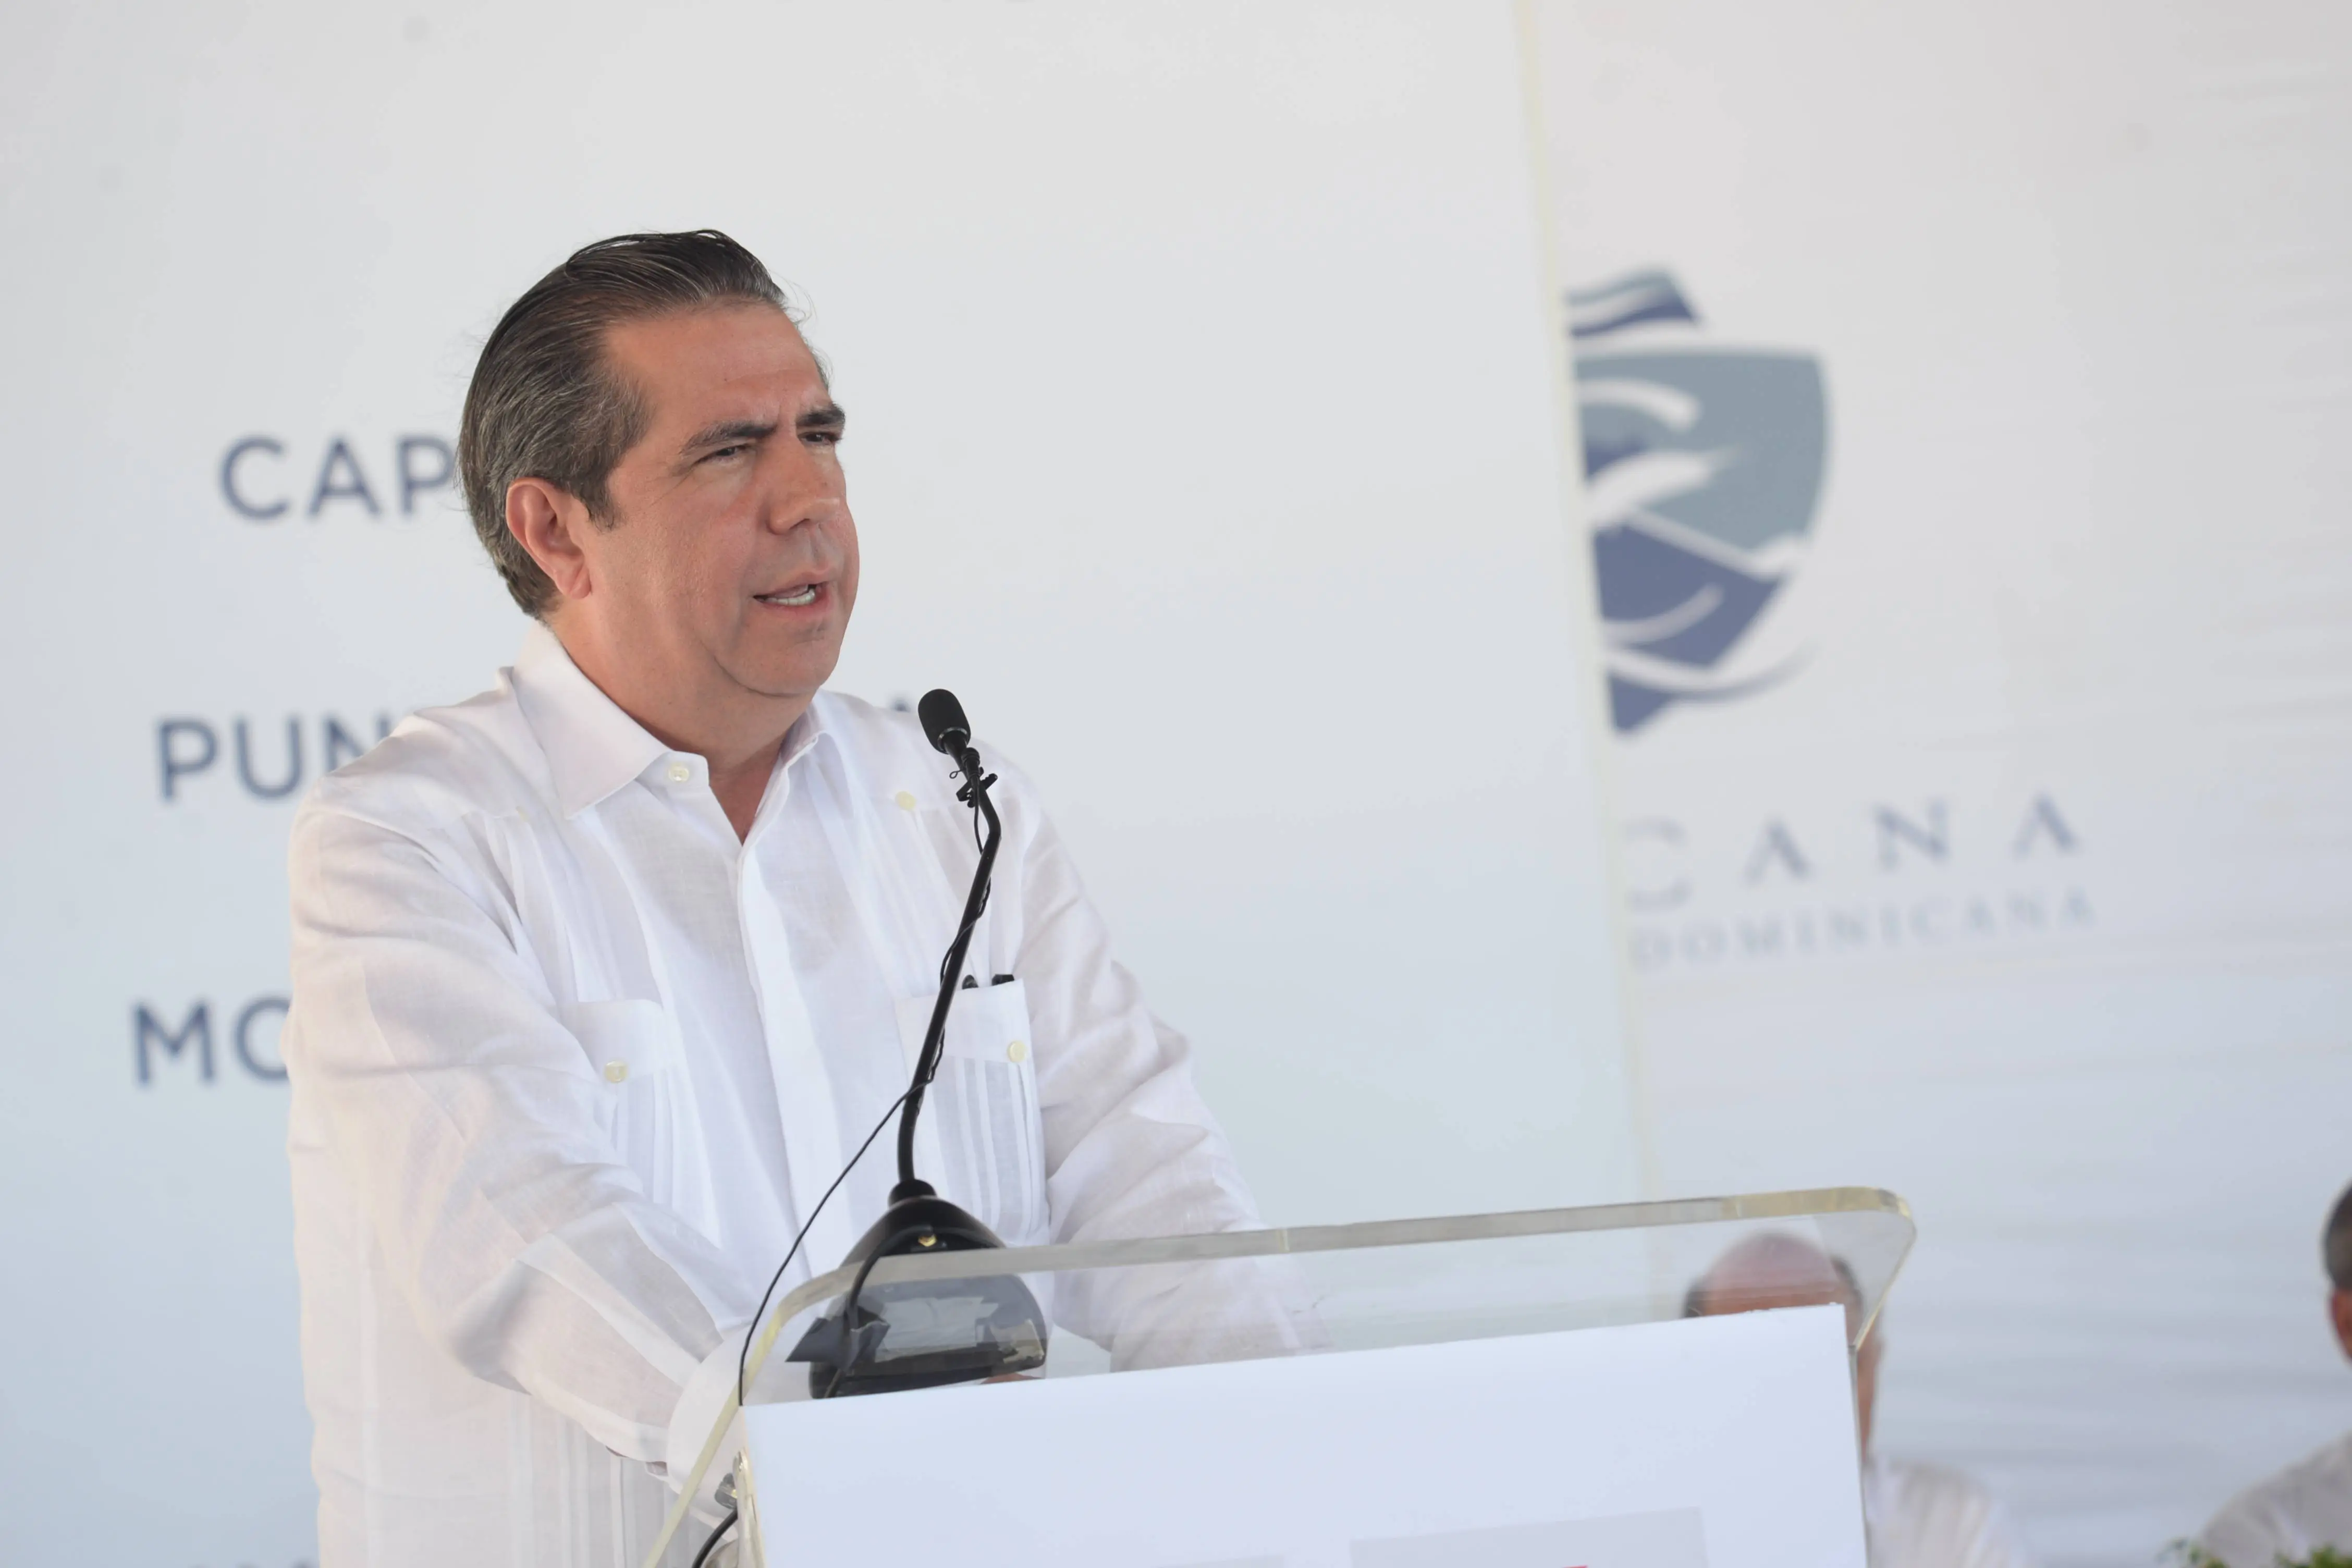 Francisco Javier elogia discurso de Danilo Medina sobre aportes económicos y sociales del turismo